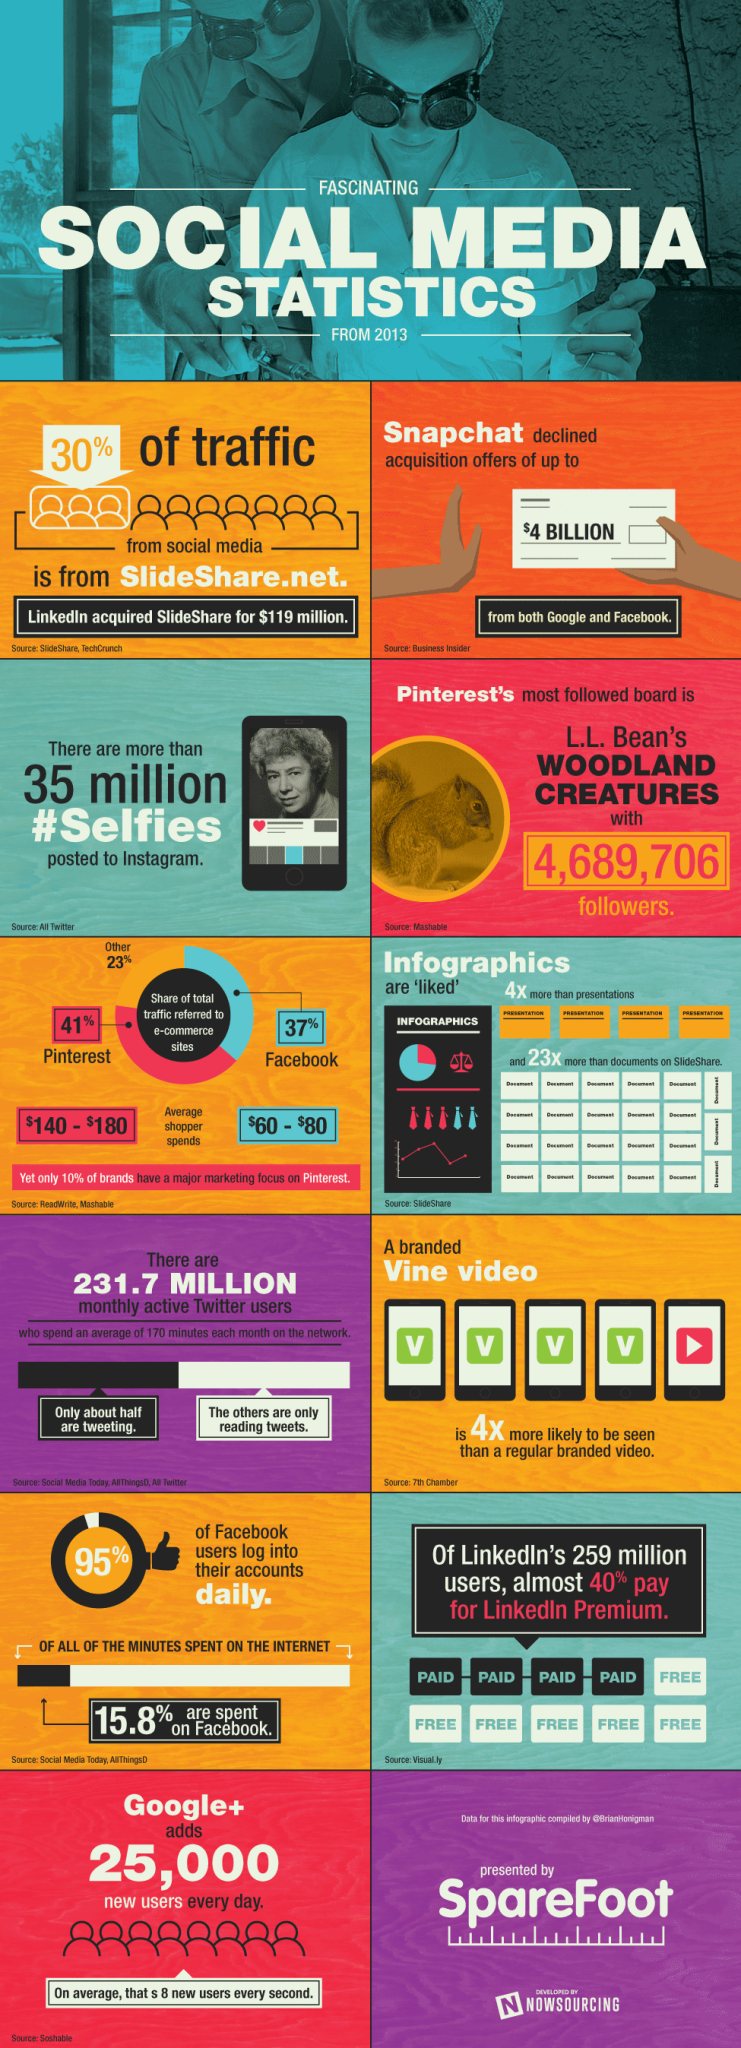 Datos curiosos y estadísticas de los socialmedia en 2013